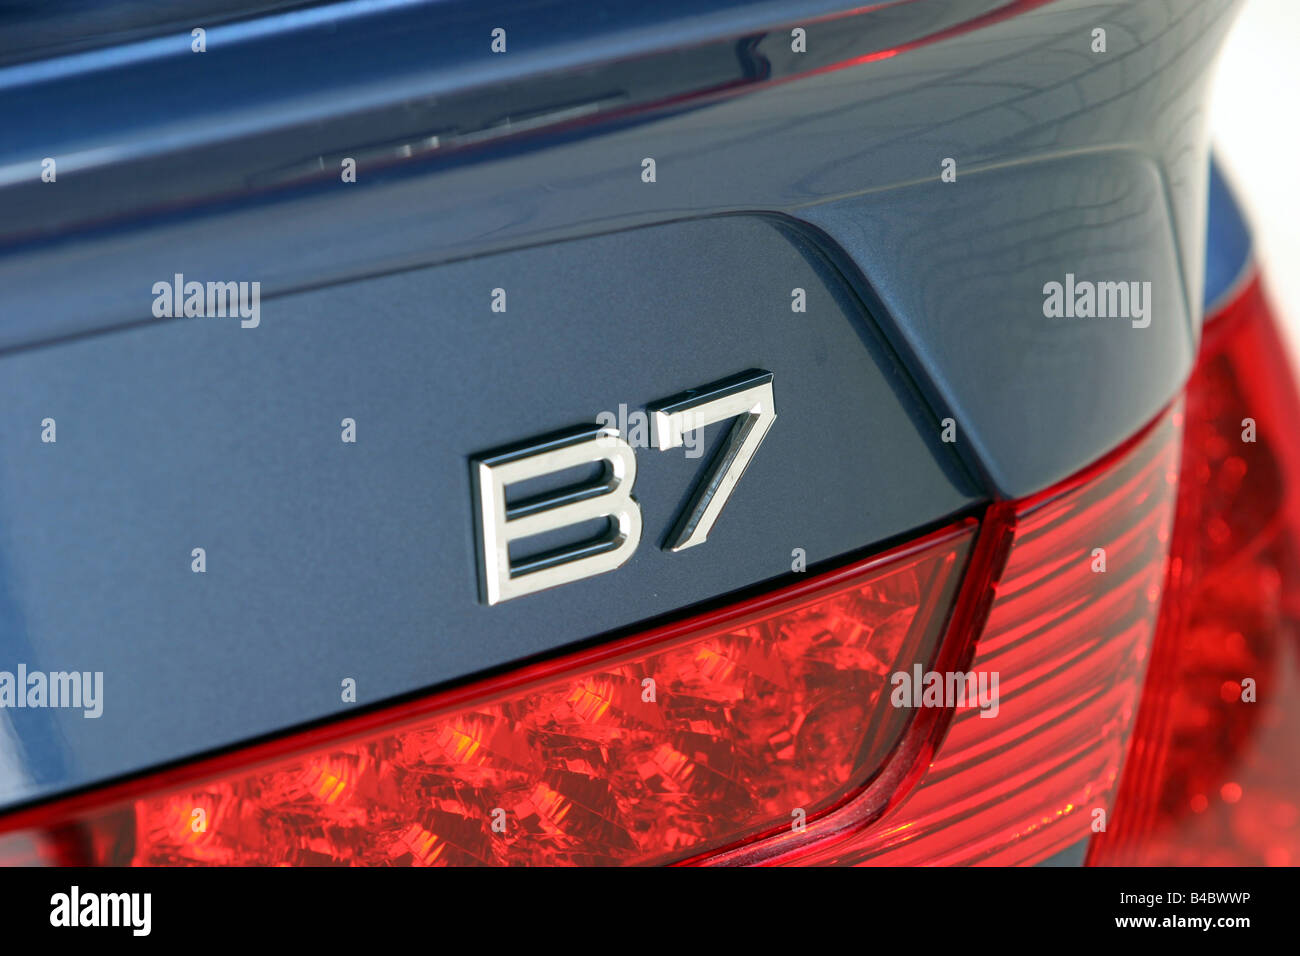 Voiture, BMW Alpina B7, Limousine, roadster, bleu, l'année de modèle 2004,- vue détaillée, le nom du modèle, la technique/accessoire, l'accesseur Banque D'Images